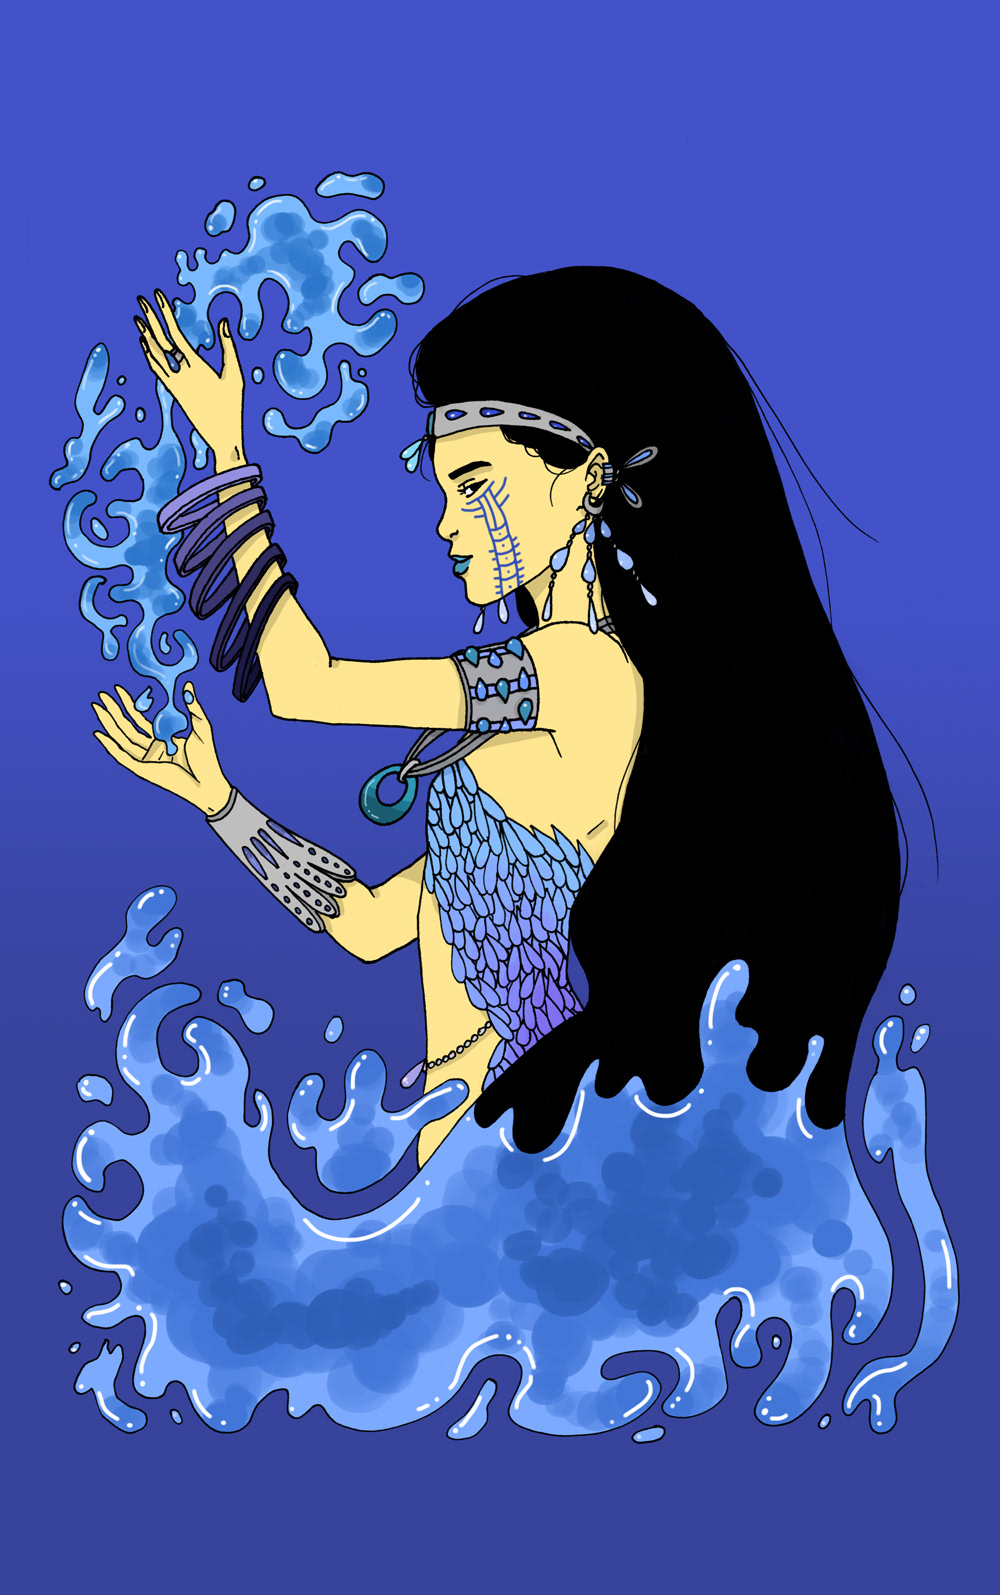 Déesse de l'eau. • Water goddess.